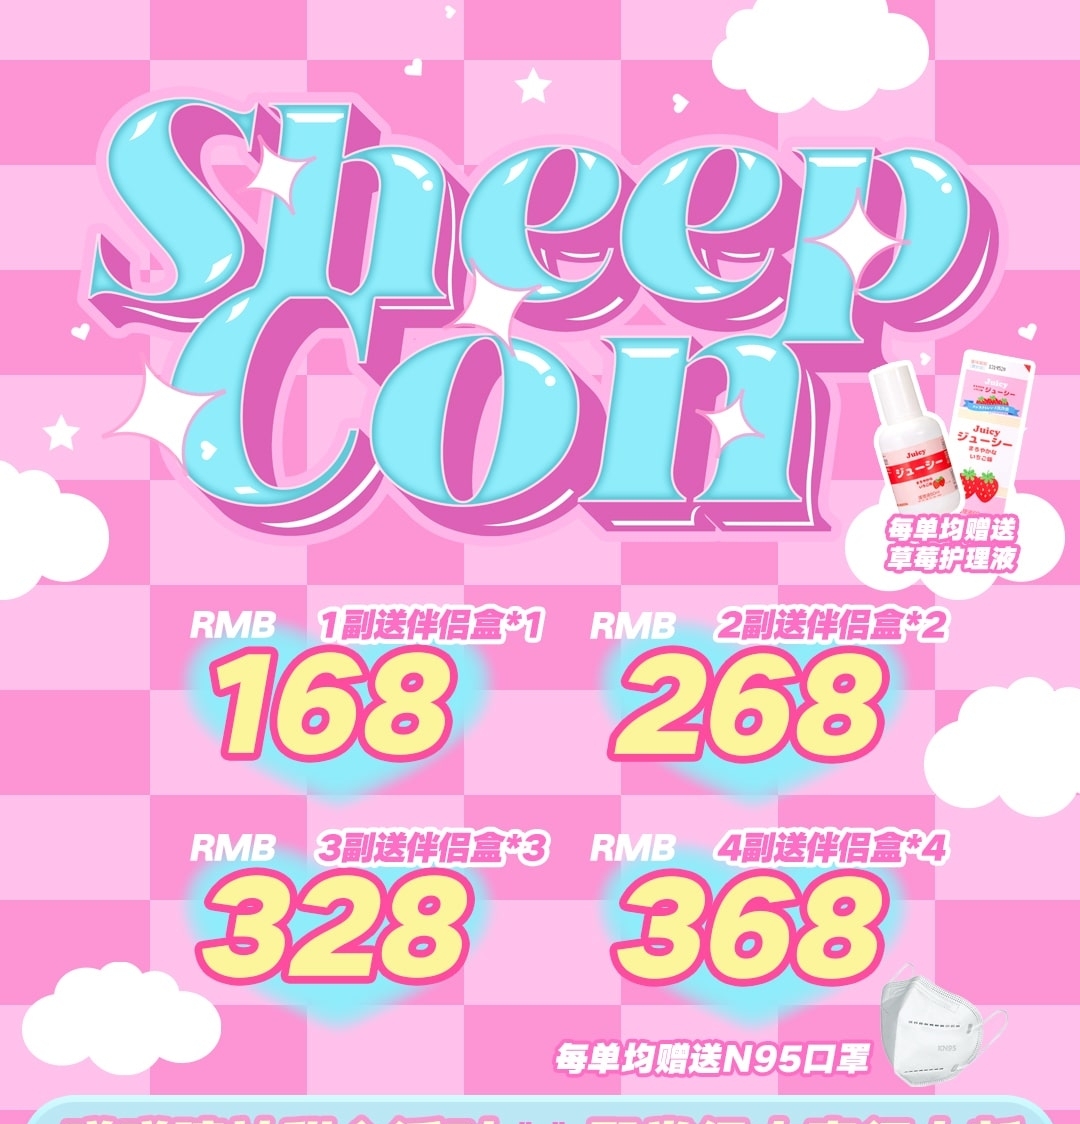 Sheepcon 双11活动 加赠护理液/N95口罩